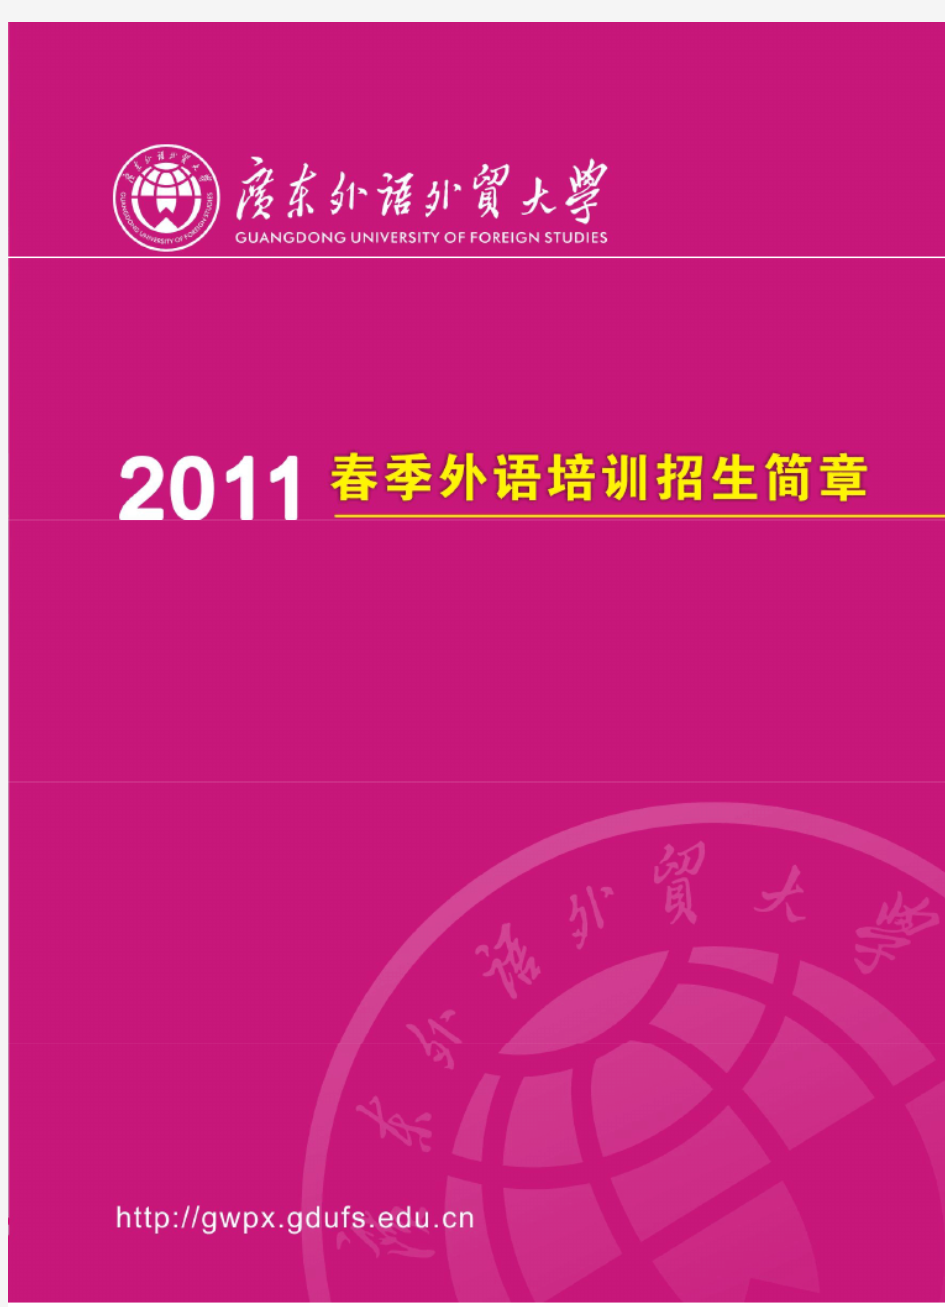 广东外语外贸大学2011上半年外语培训招生简章(彩色版)